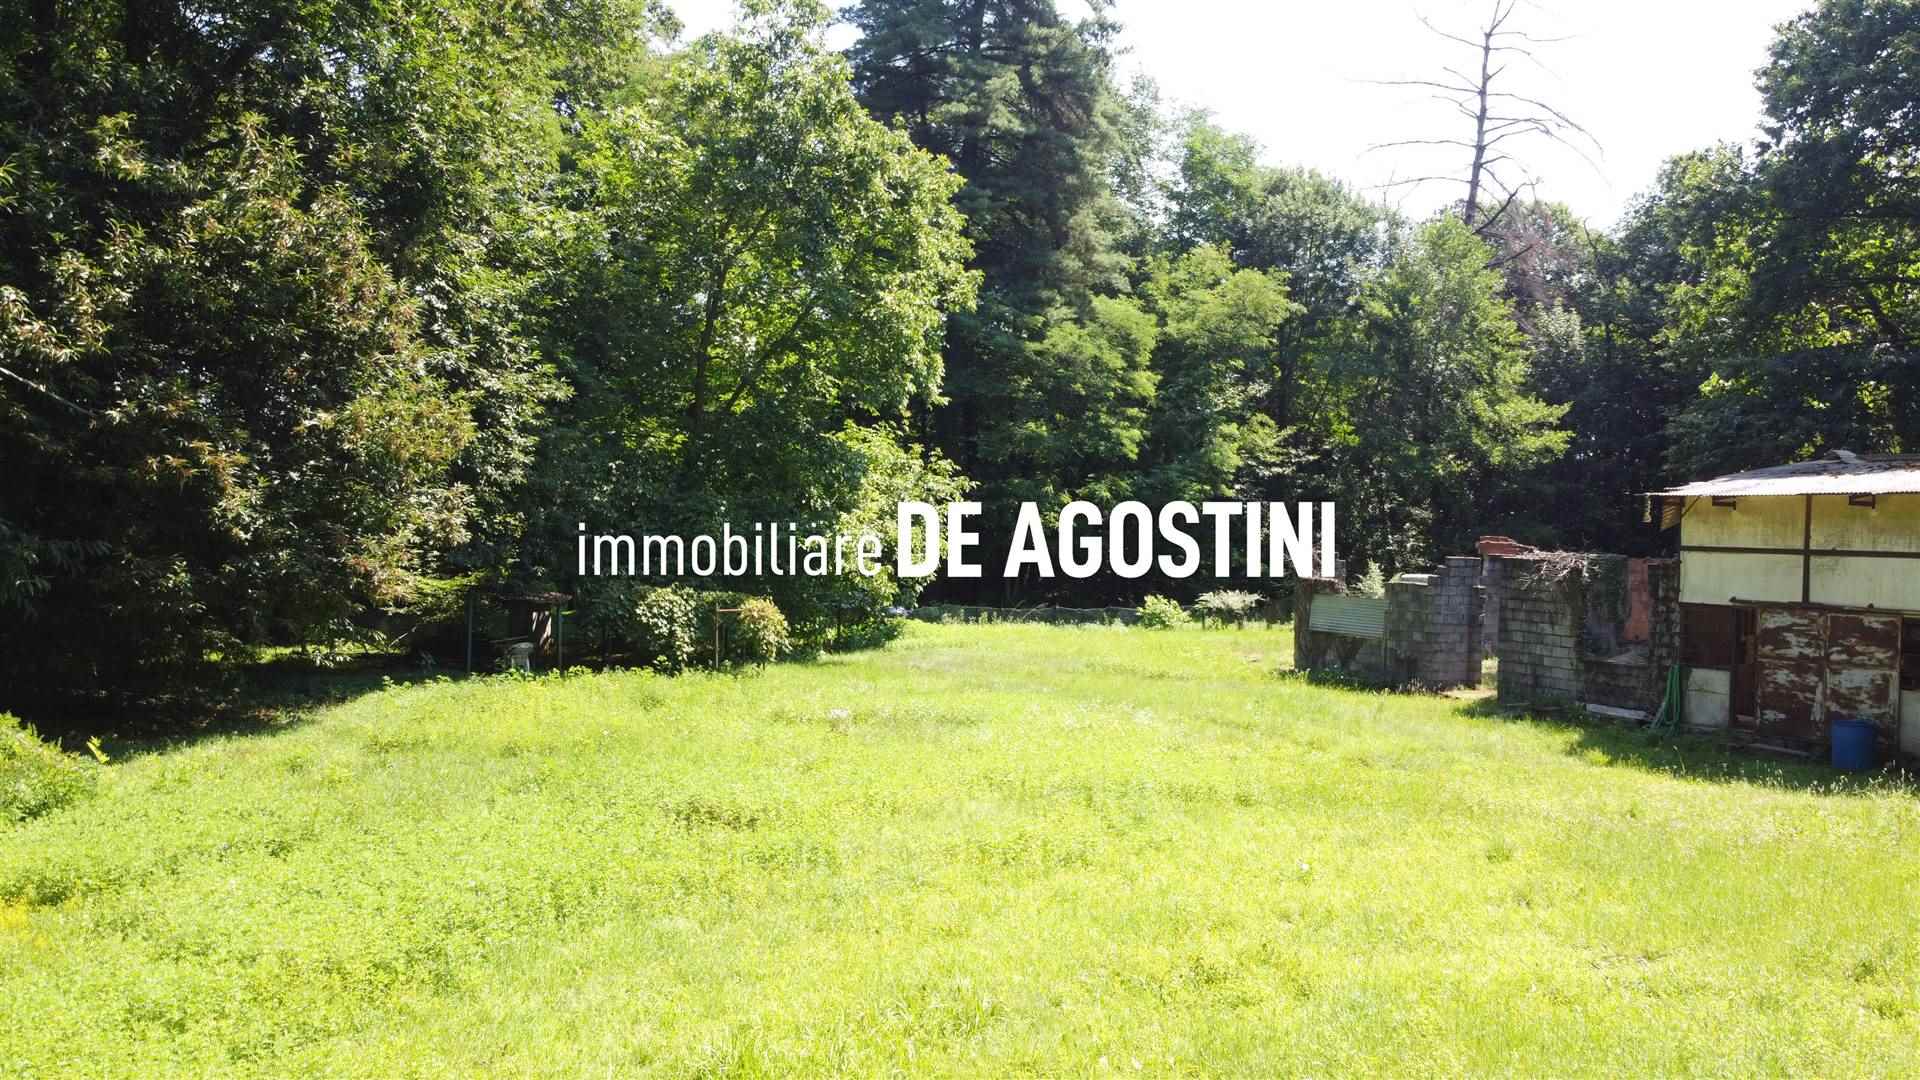 Terreno Edificabile Residenziale in vendita a Oleggio Castello, 9999 locali, prezzo € 95.000 | CambioCasa.it